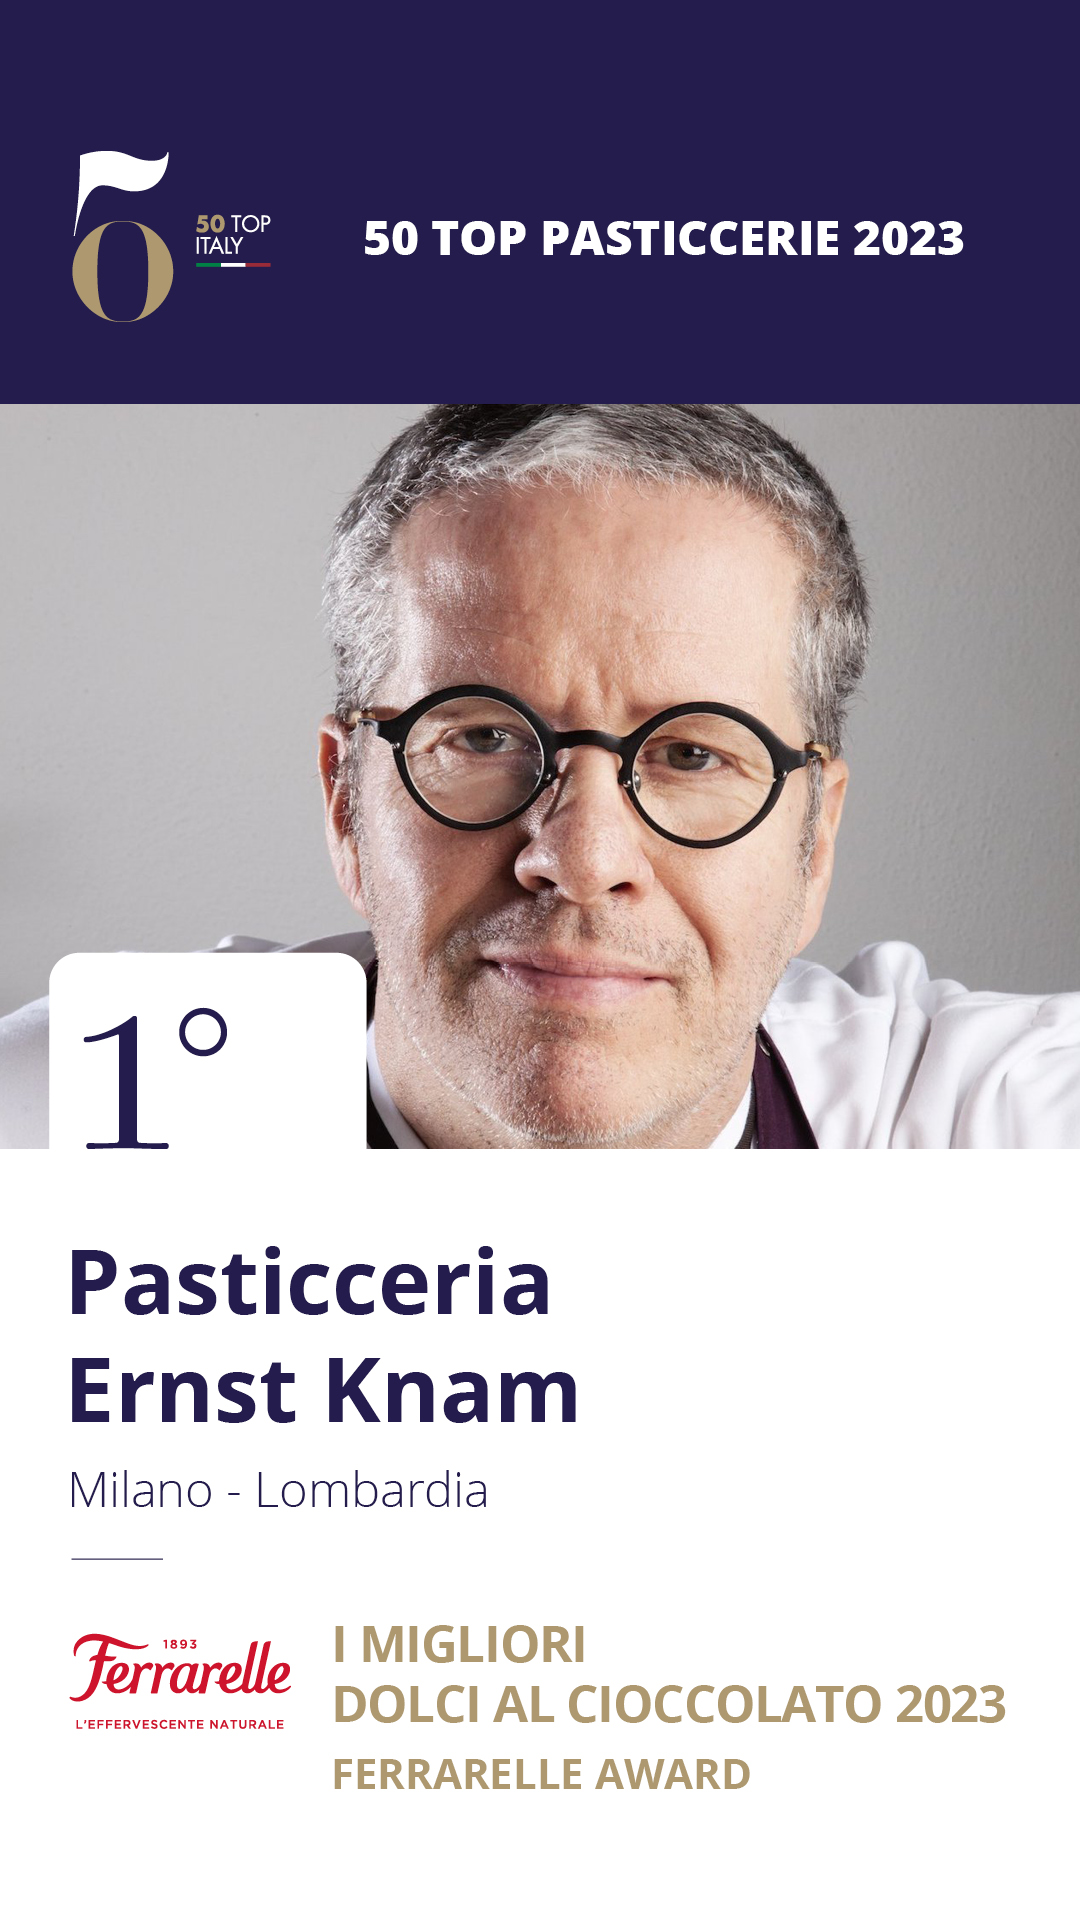 1. Pasticceria Ernst Knam – Milano, Lombardia